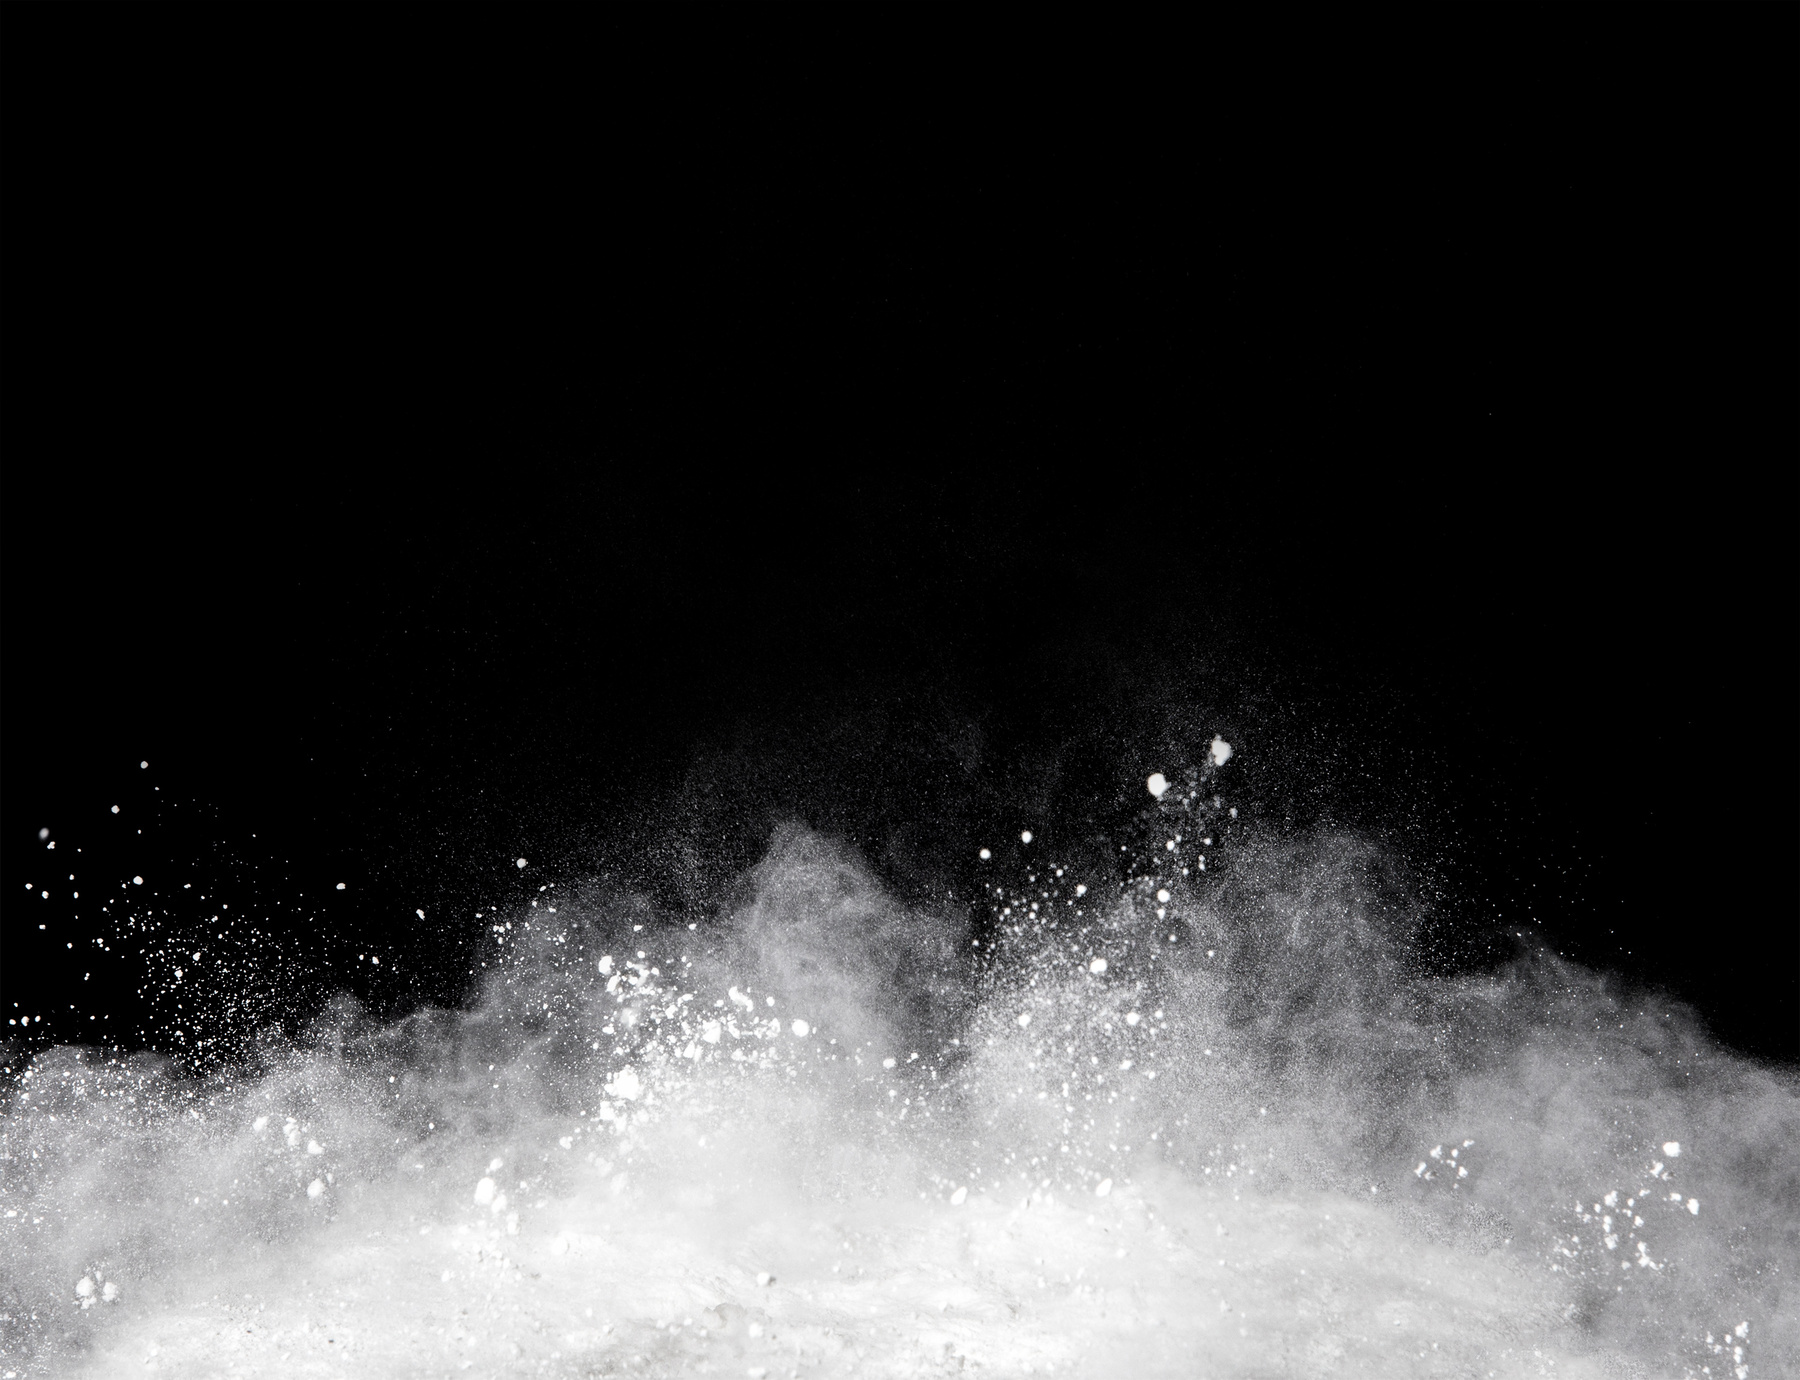 white powder splash on black background